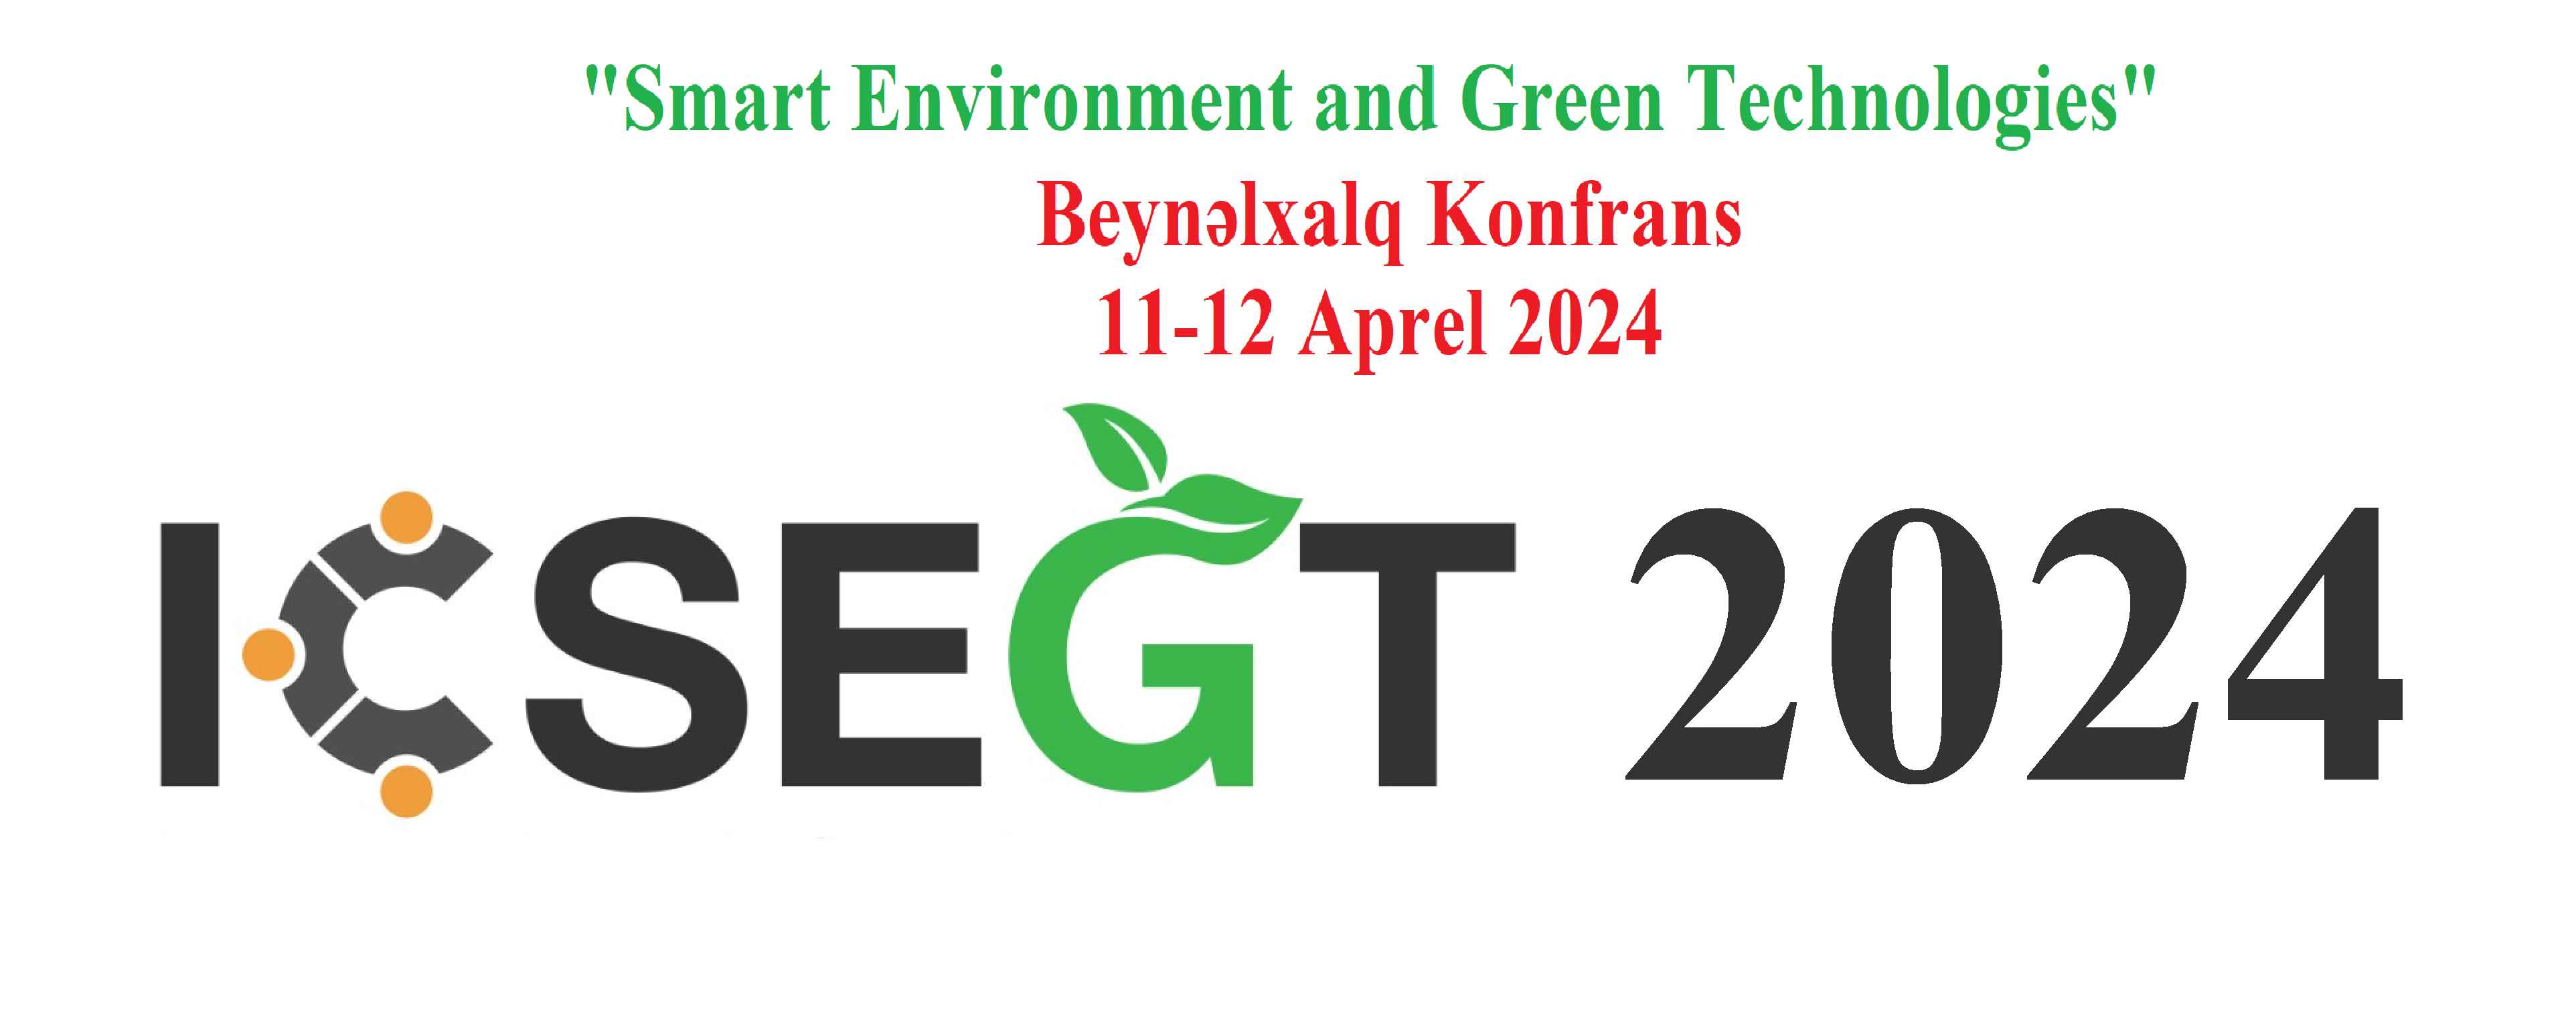 В УОЮ пройдет международная конференция «Smart Environment and Green Technologies»